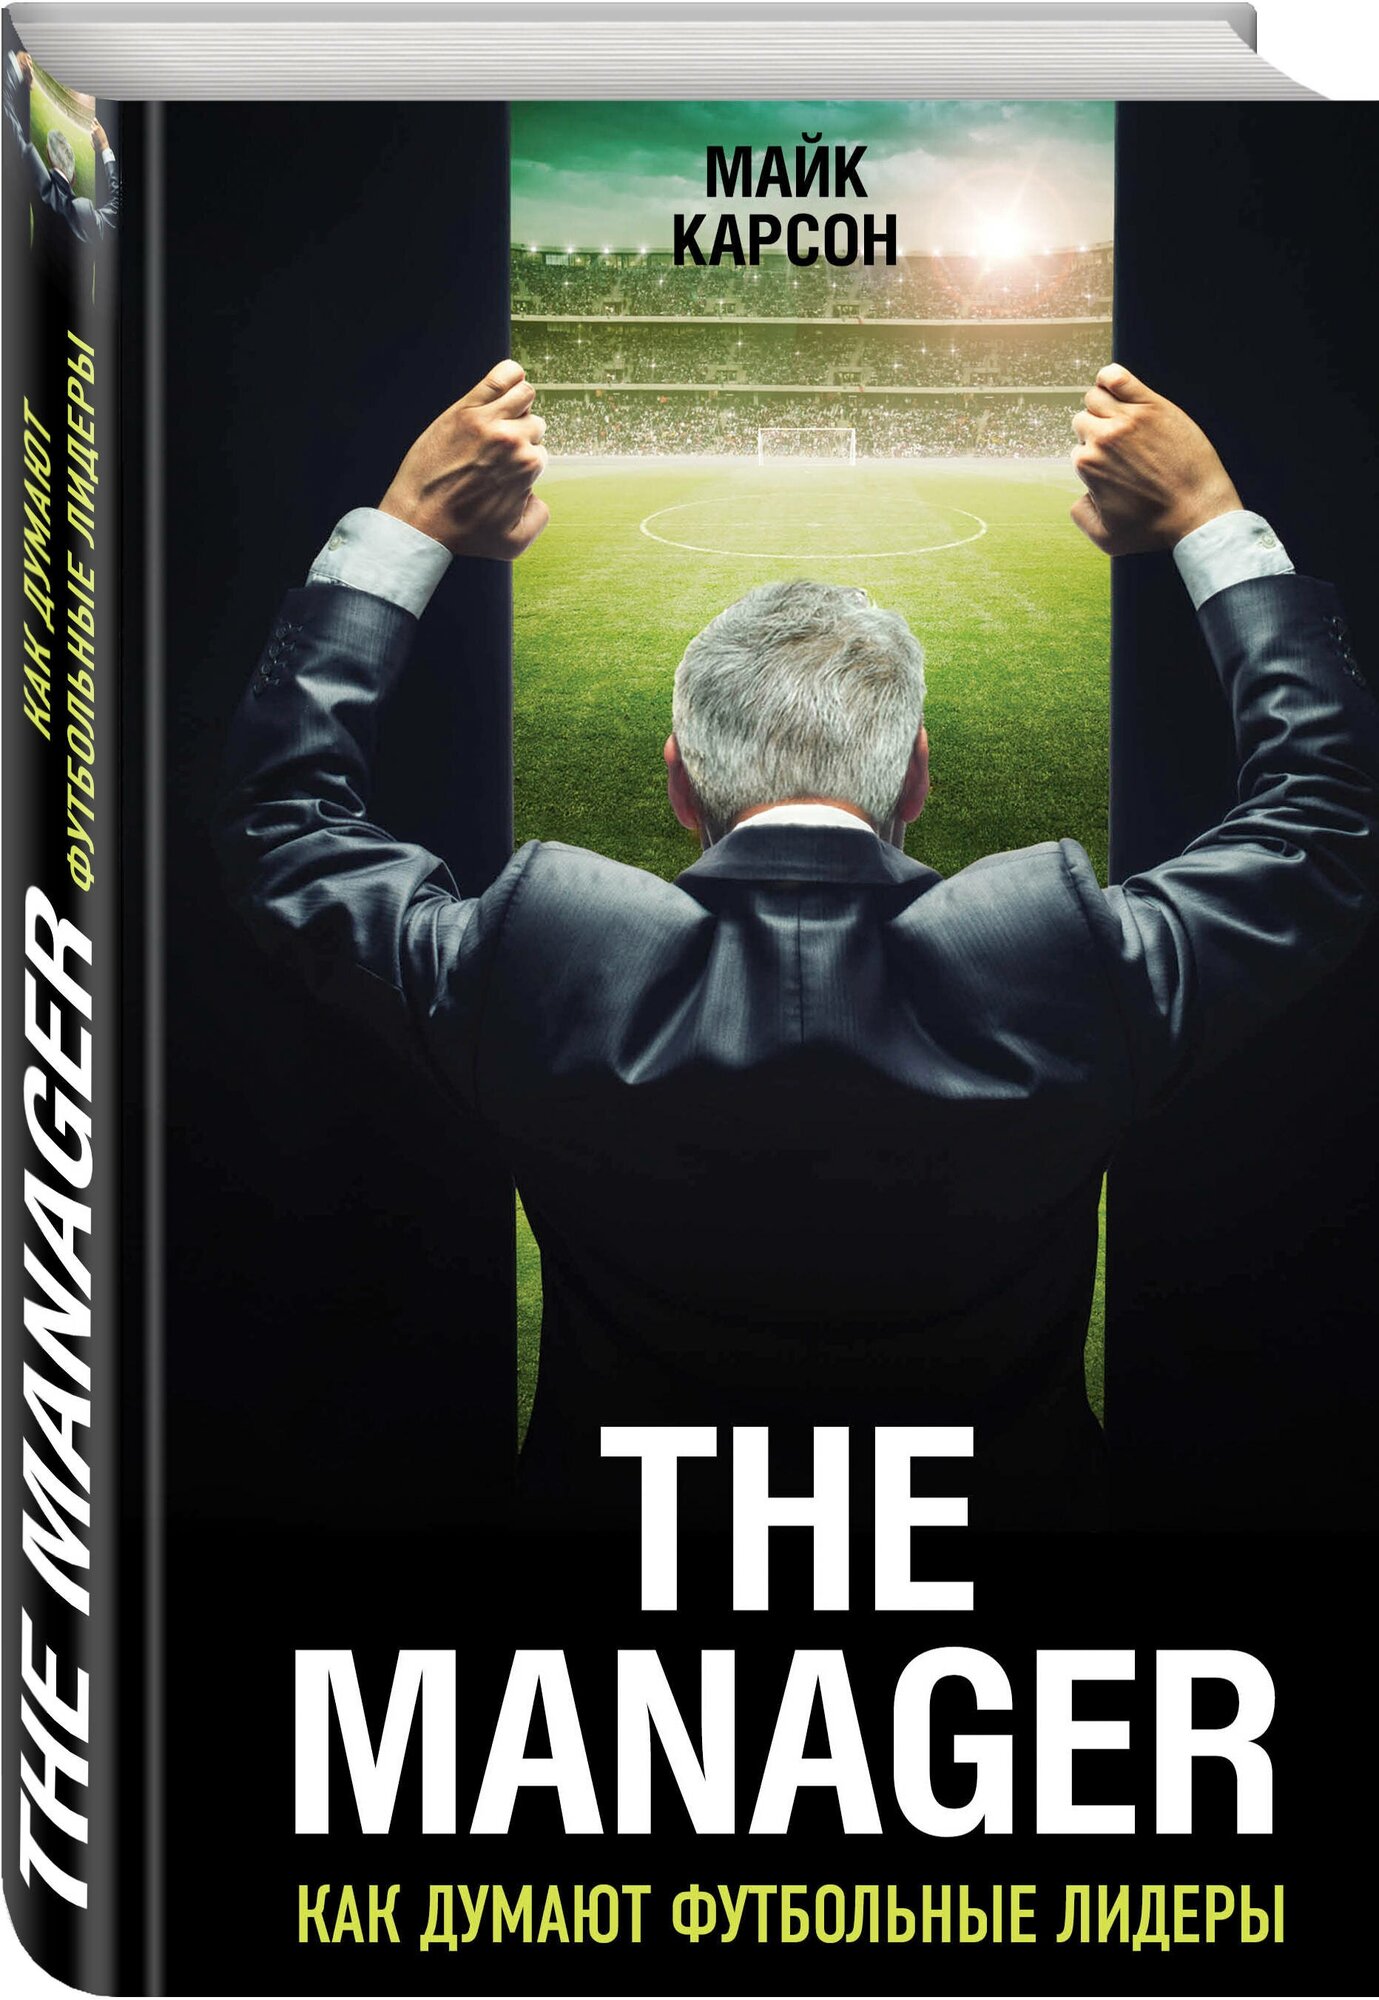 Карсон М. The Manager. Как думают футбольные лидеры (2-е изд, испр.)